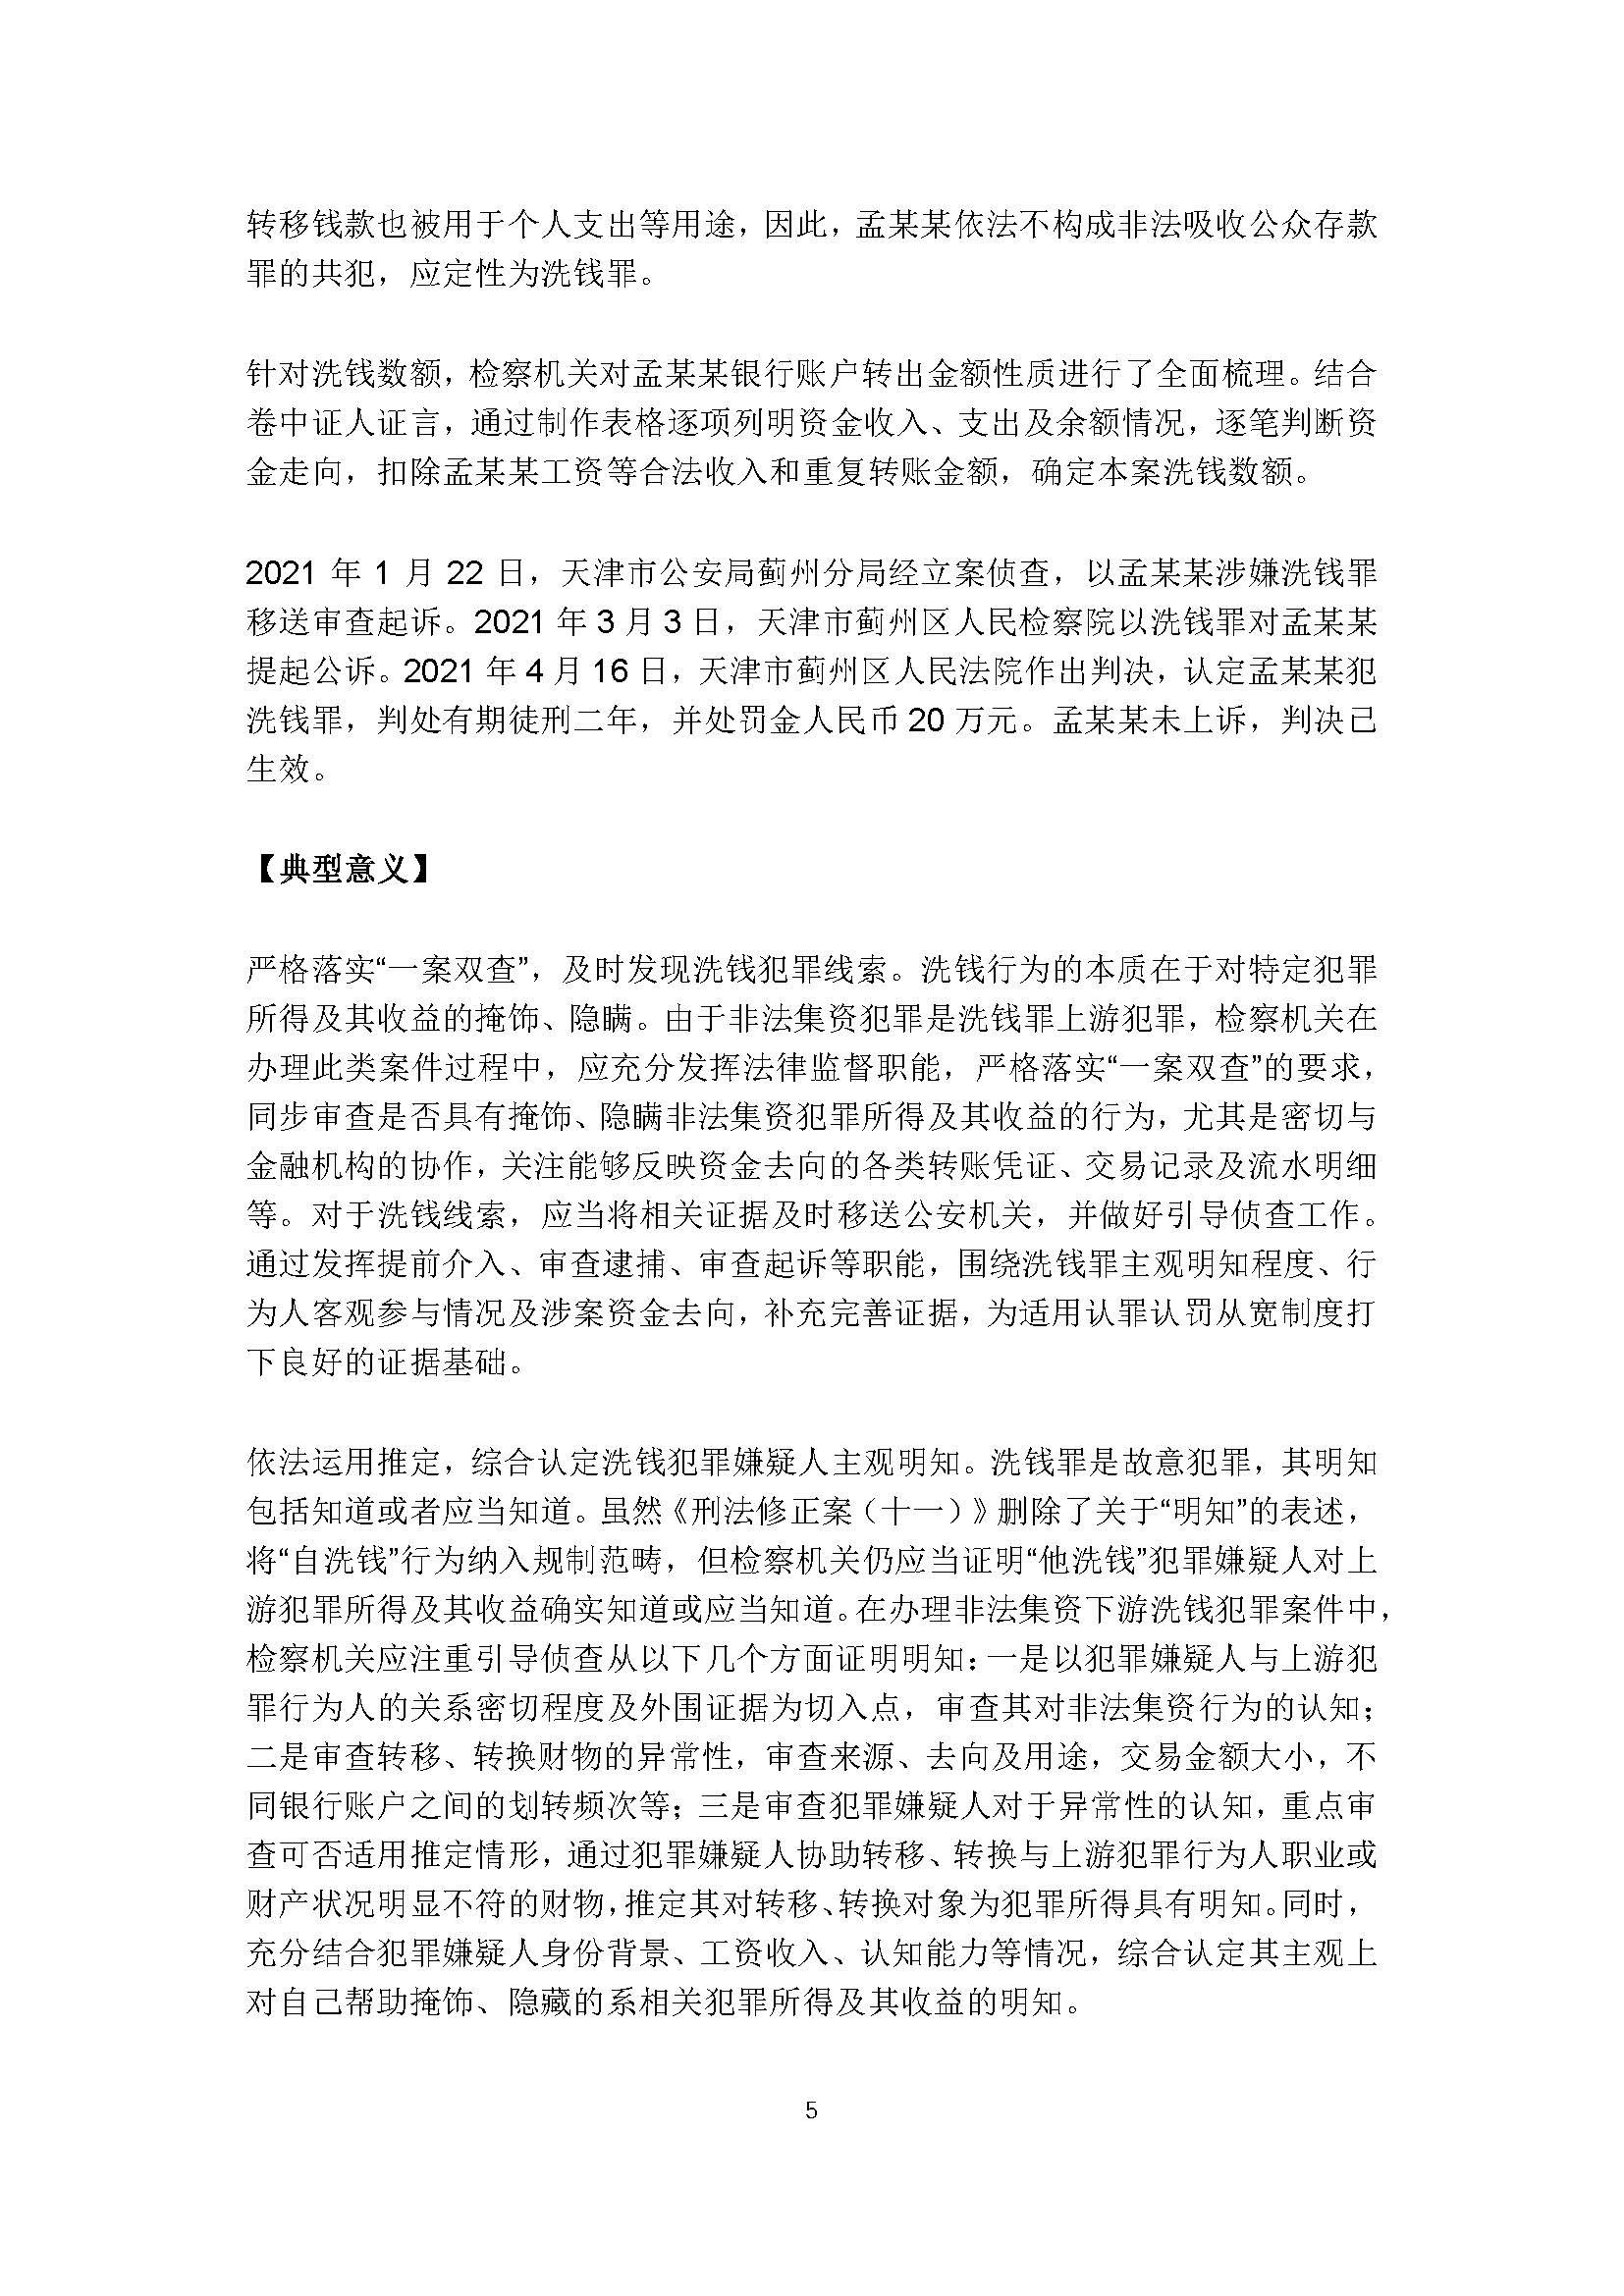 天津市人民检察院 中国人民银行天津分行联合发布惩治洗钱犯罪典型案例_页面_05